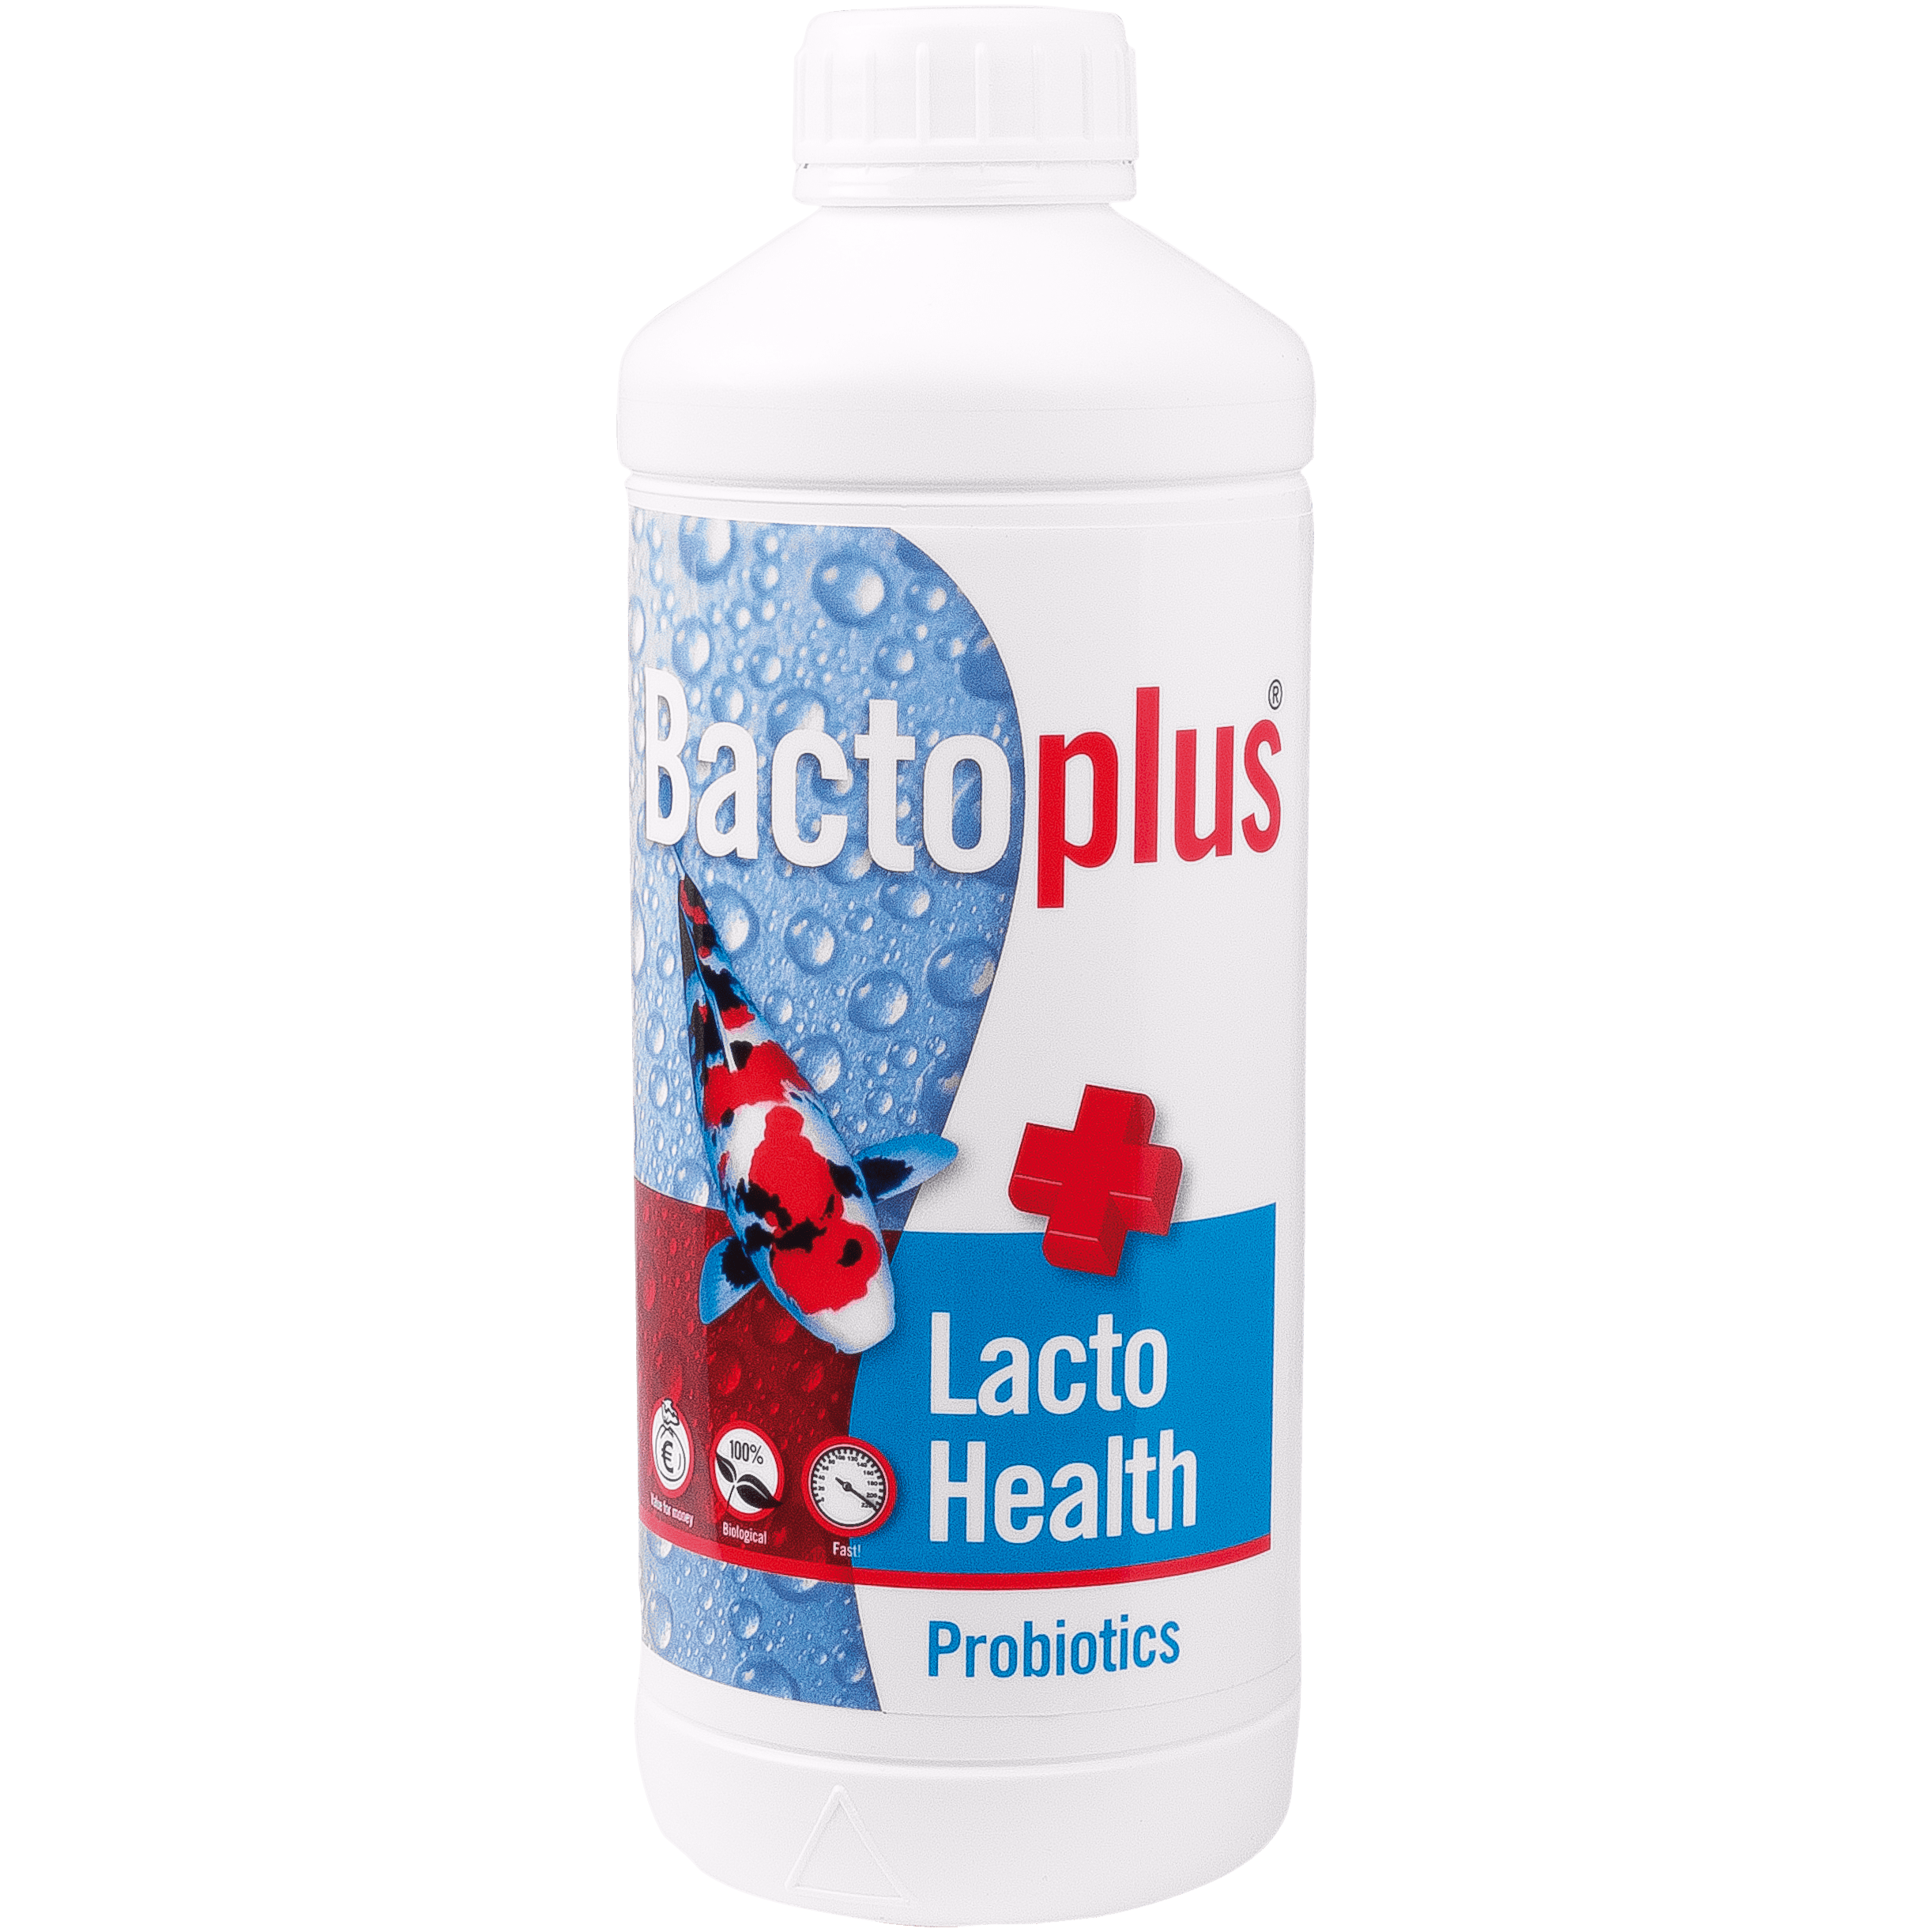 Bactoplus BactoPlus Lacto Health 1L pour 20M³ - Probiotique composé de bactéries lactiques 8717496170972 05050375